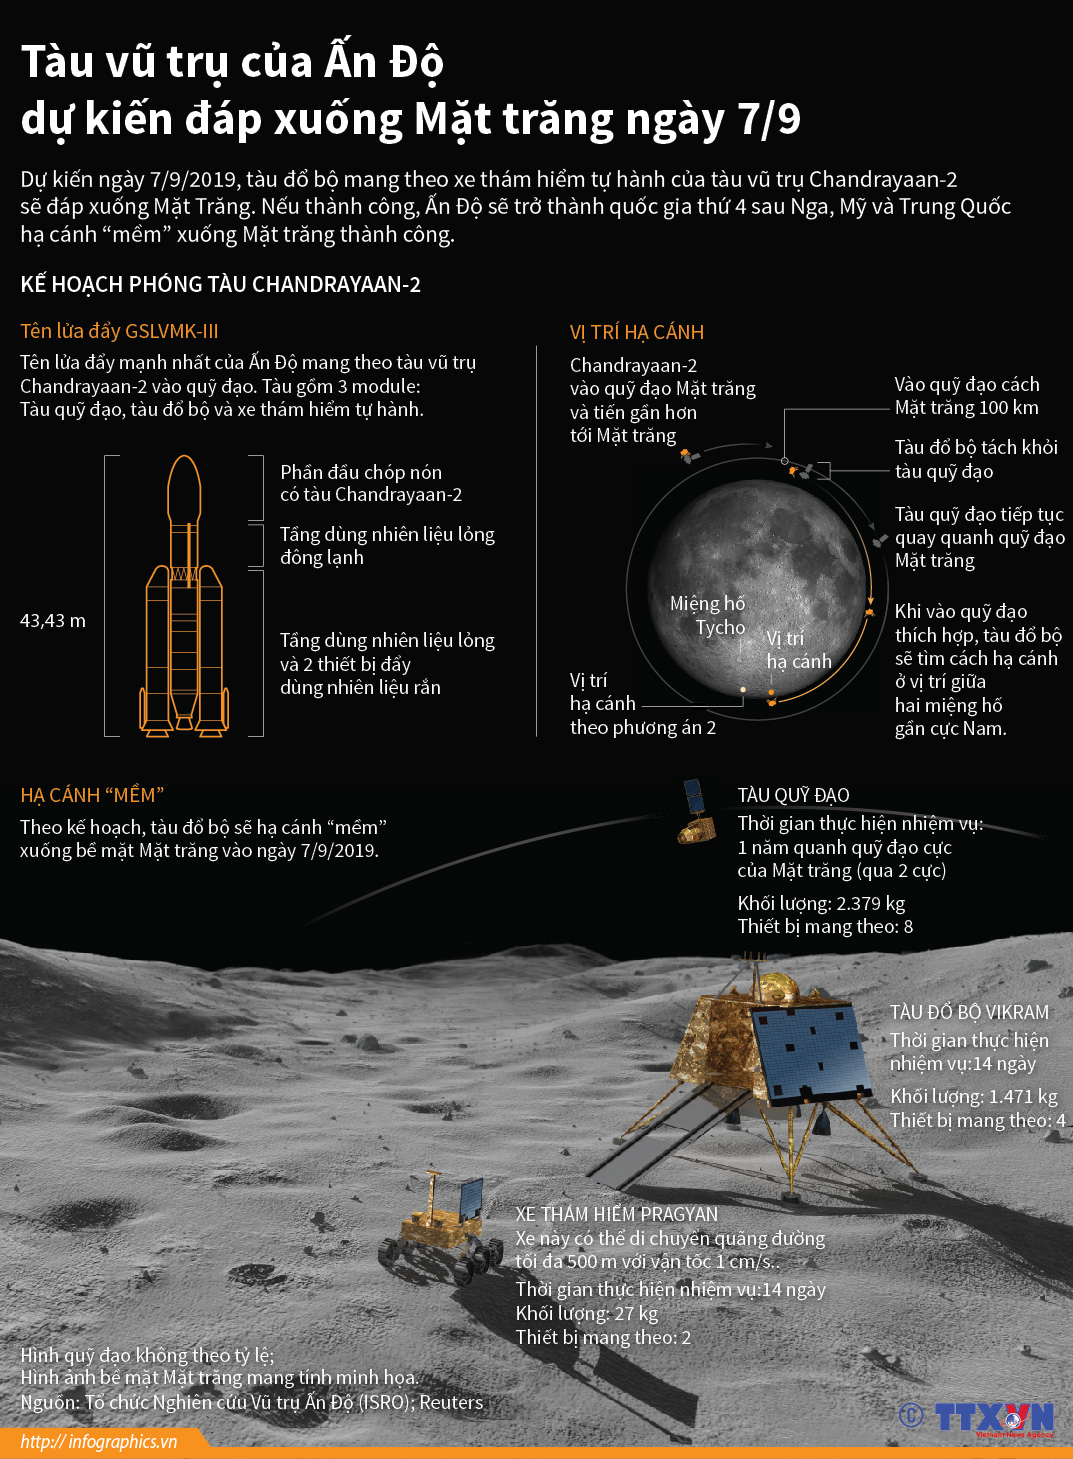 Tưởng tượng một chuyến phiêu lưu đầy mạo hiểm khi đáp xuống Mặt trăng? Hãy cùng xem hình ảnh về những phi hành gia dũng cảm trên trái đất đứng trước chiếc tàu đáp xuống Mặt Trăng.